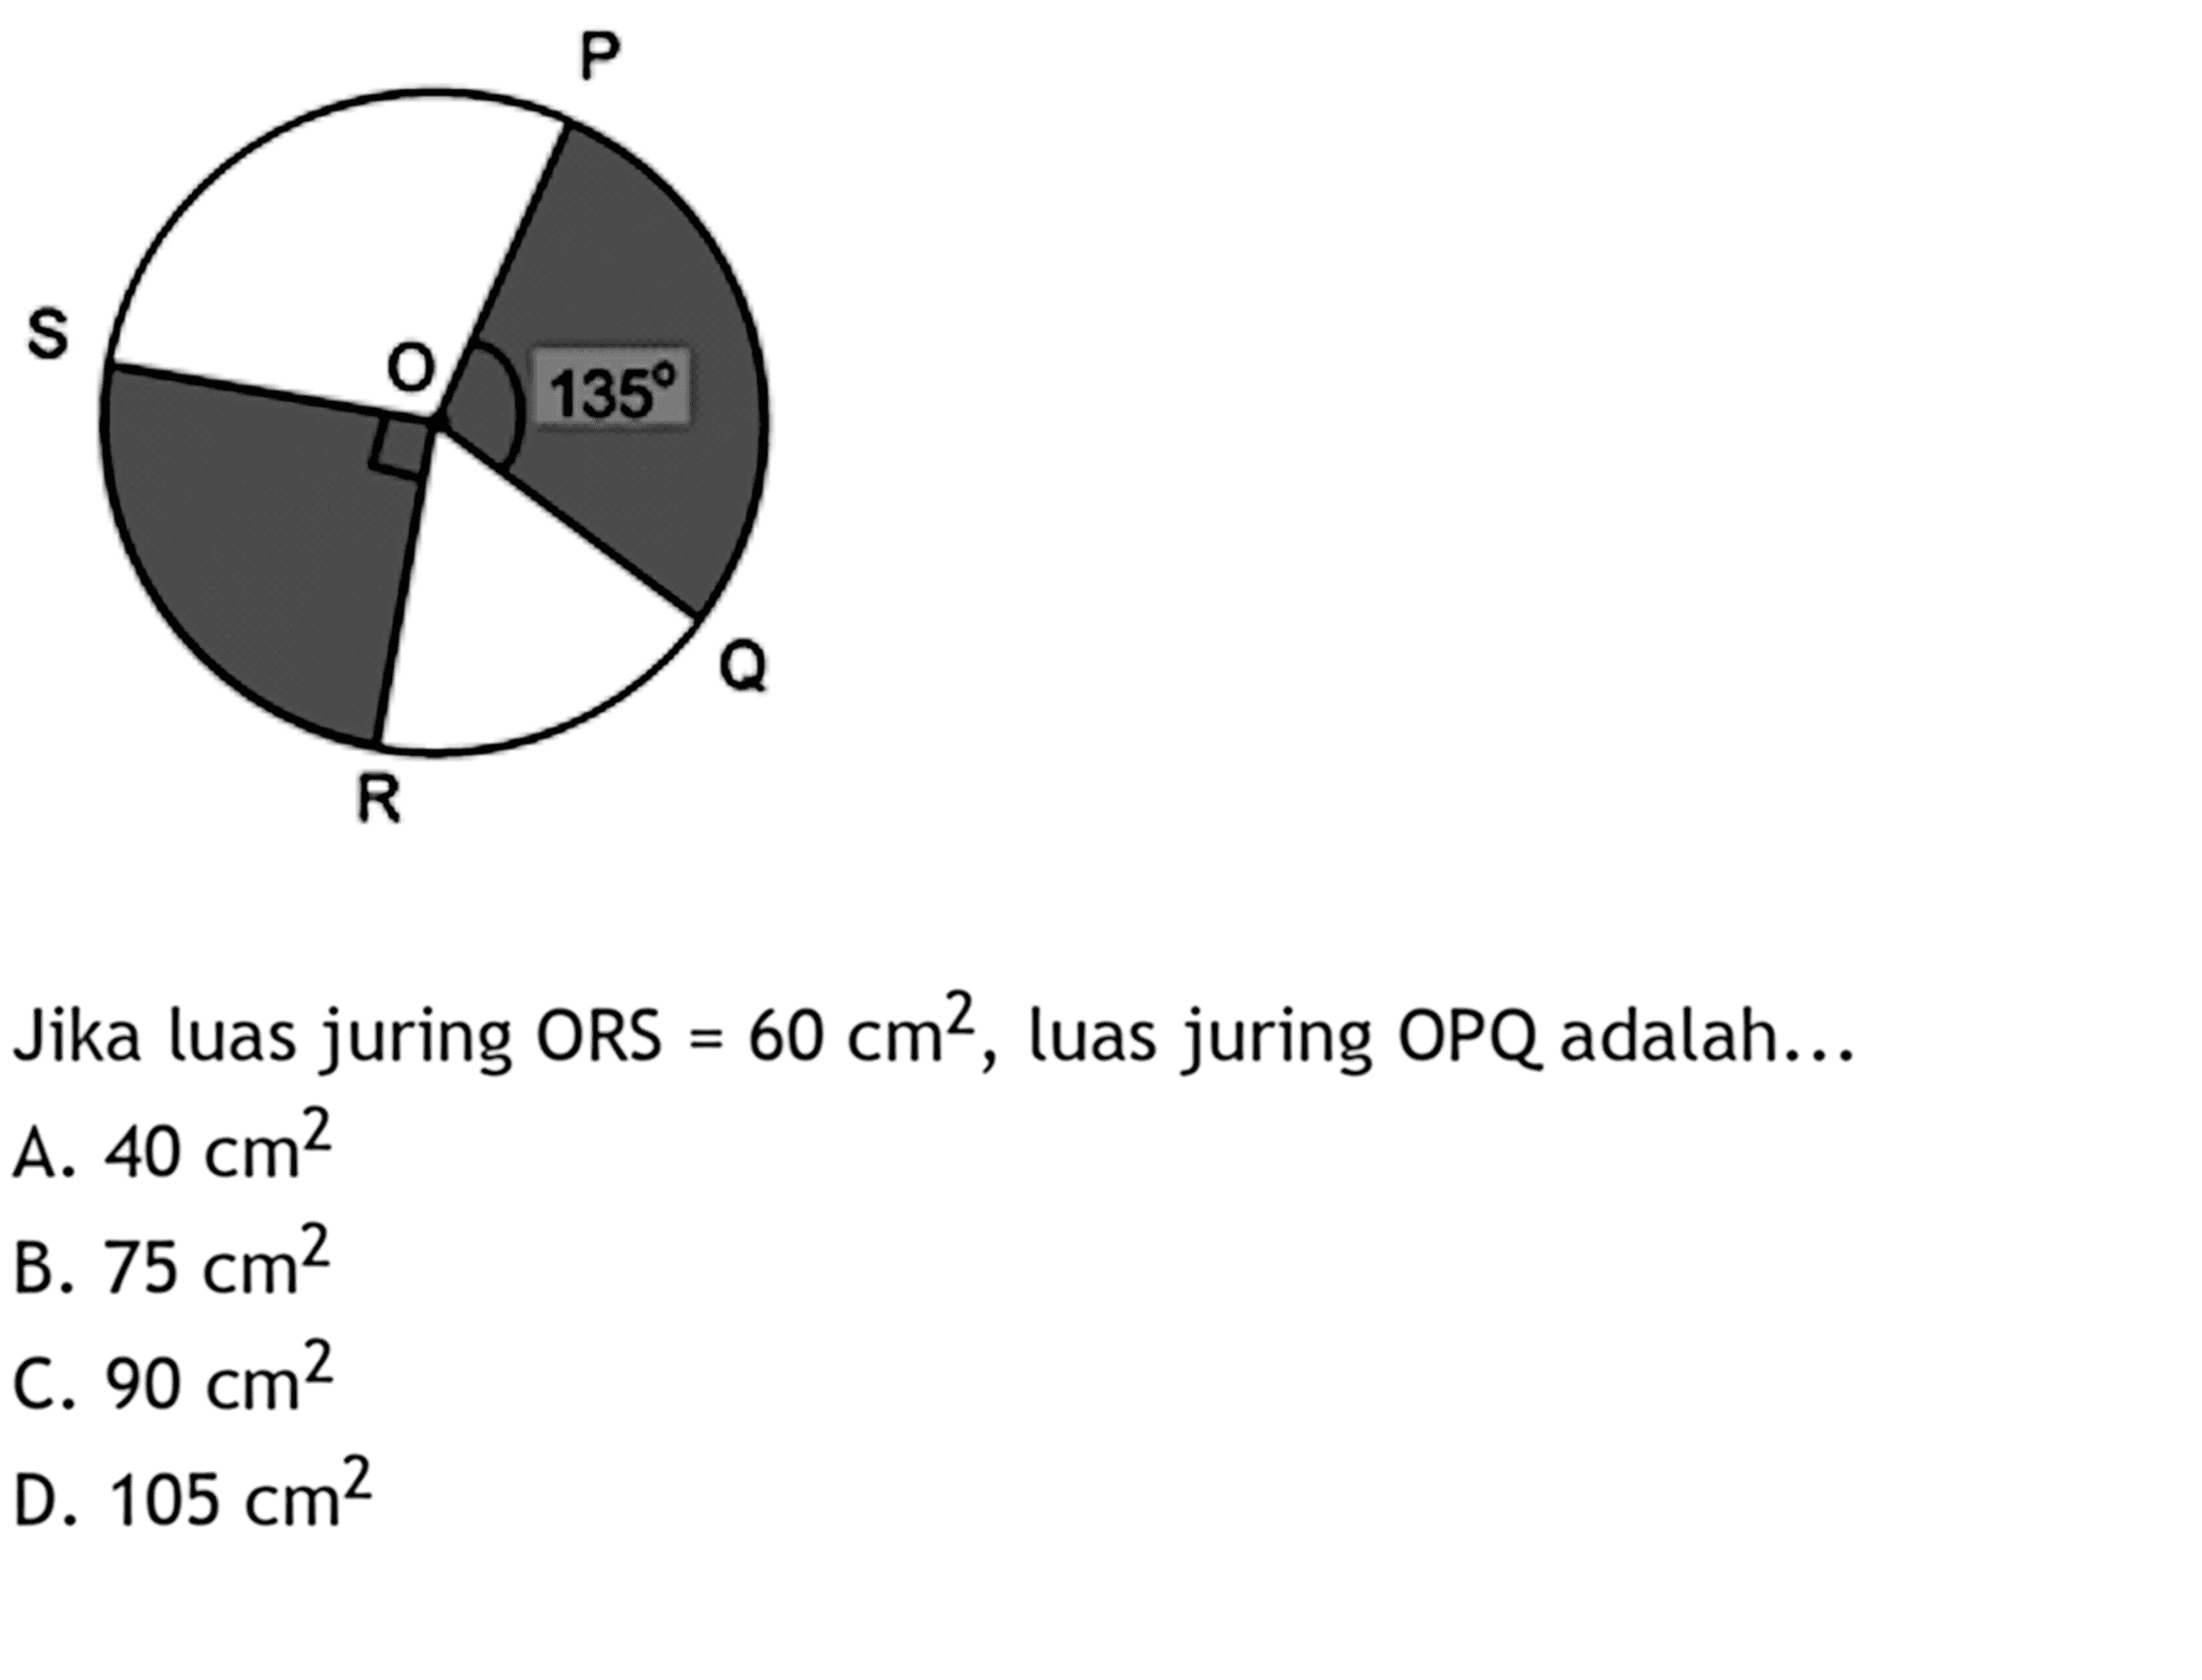 Jika luas juring ORS=60 cm^2, luas juring OPQ adalah...